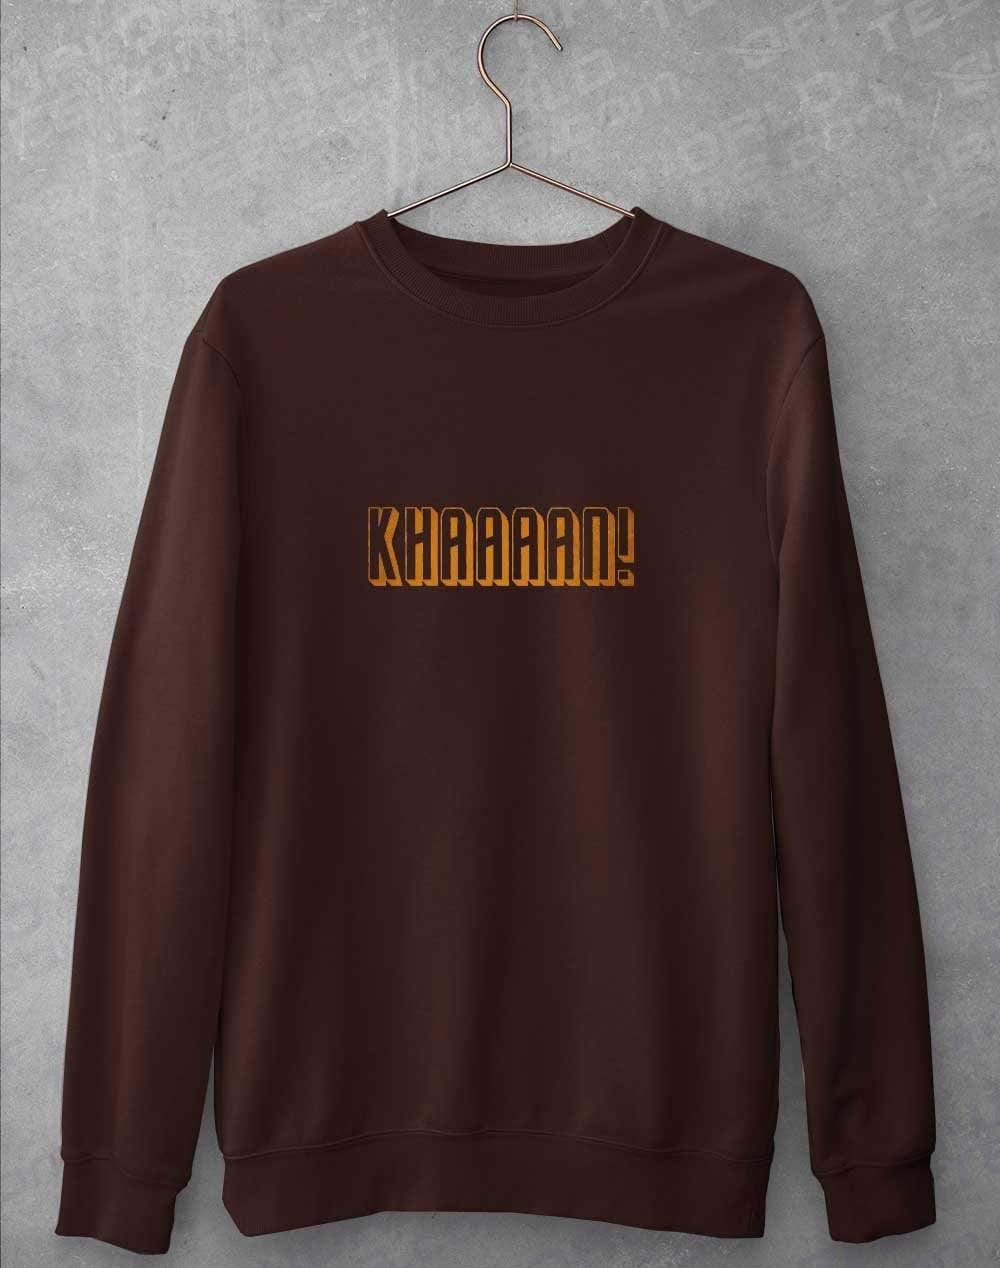 KHAAAAAN Sweatshirt S / Hot Chocolate  - Off World Tees